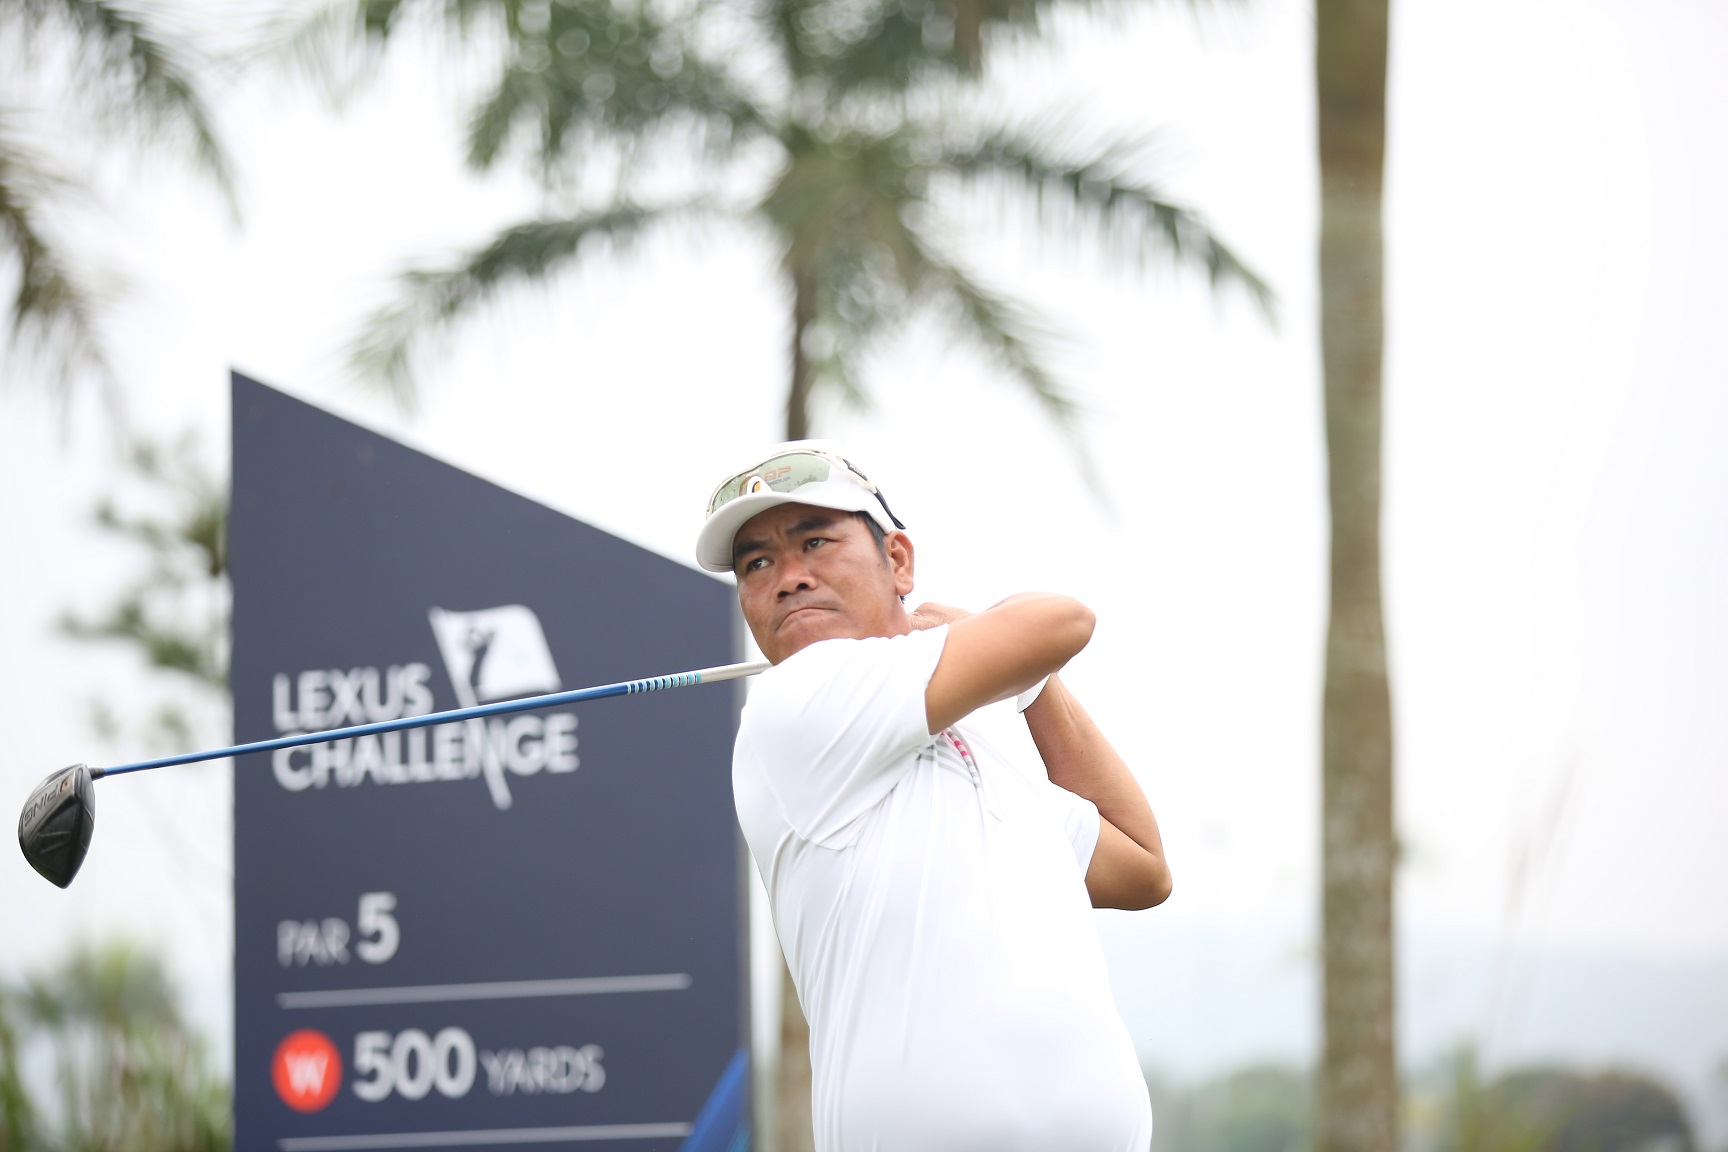 Đinh Song Hài: Vượt qua giông bão để trở thành golfer chuyên nghiệp